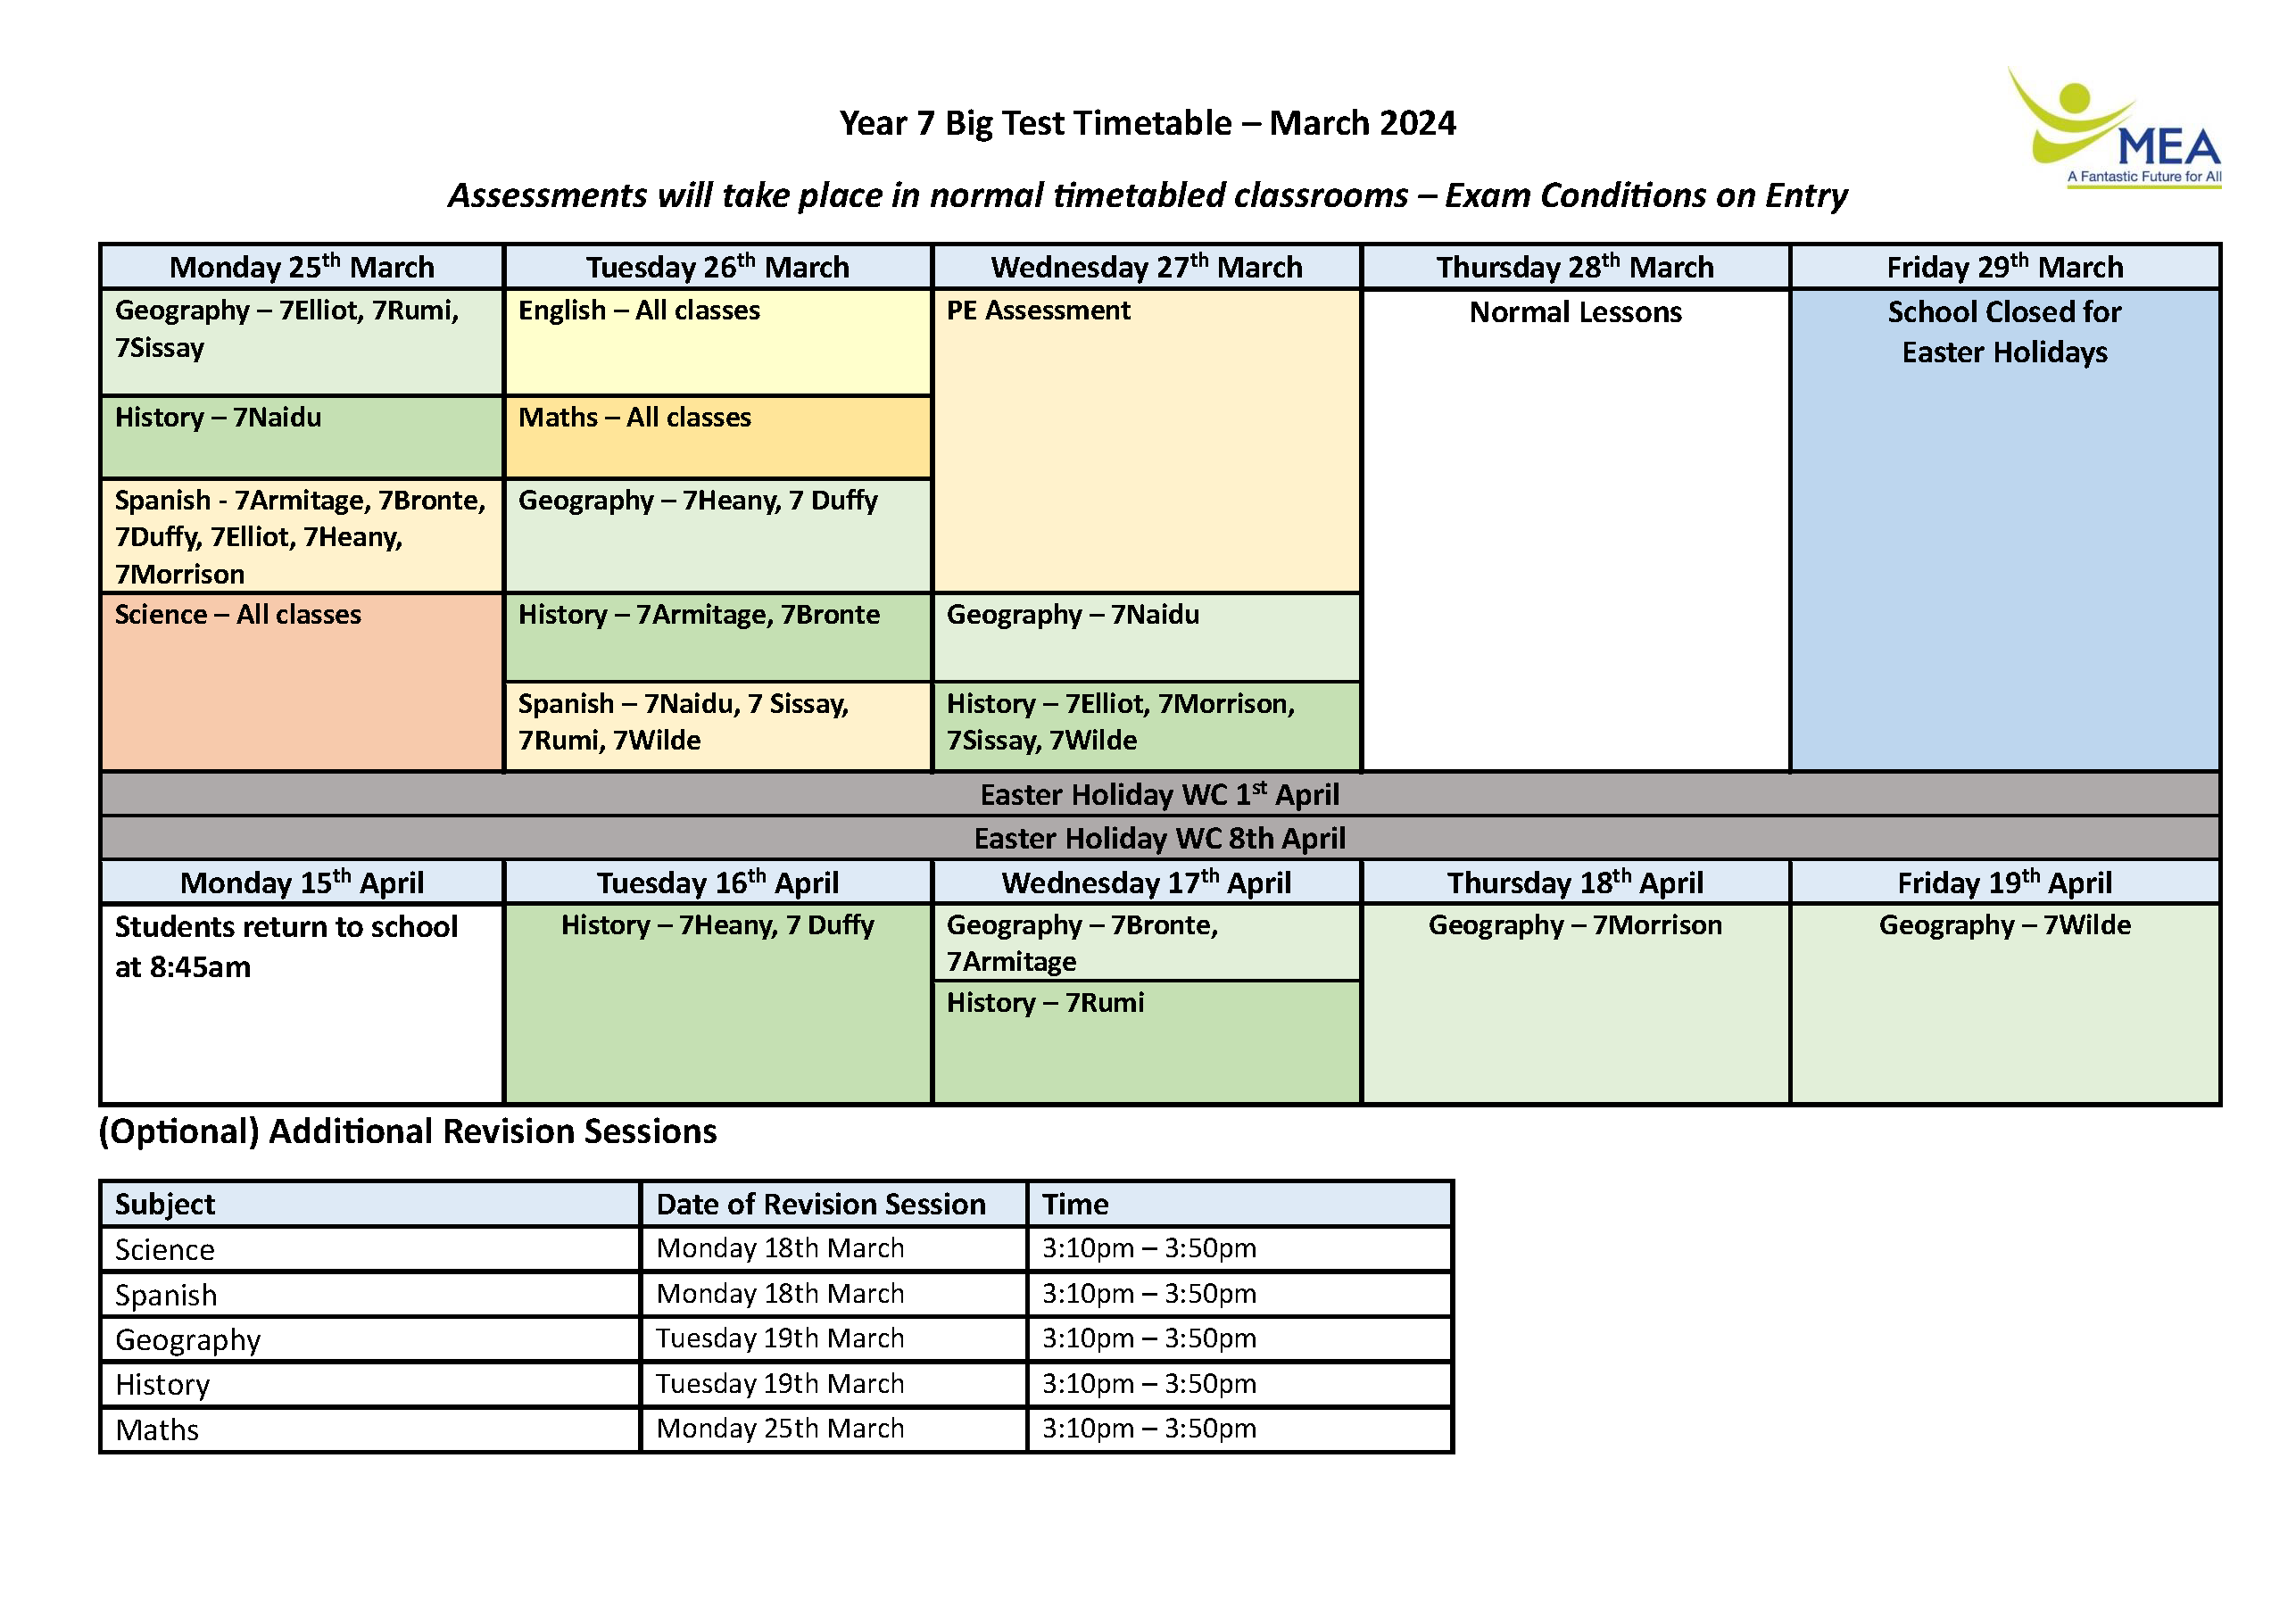 Y7 Big Test Timetable March 24